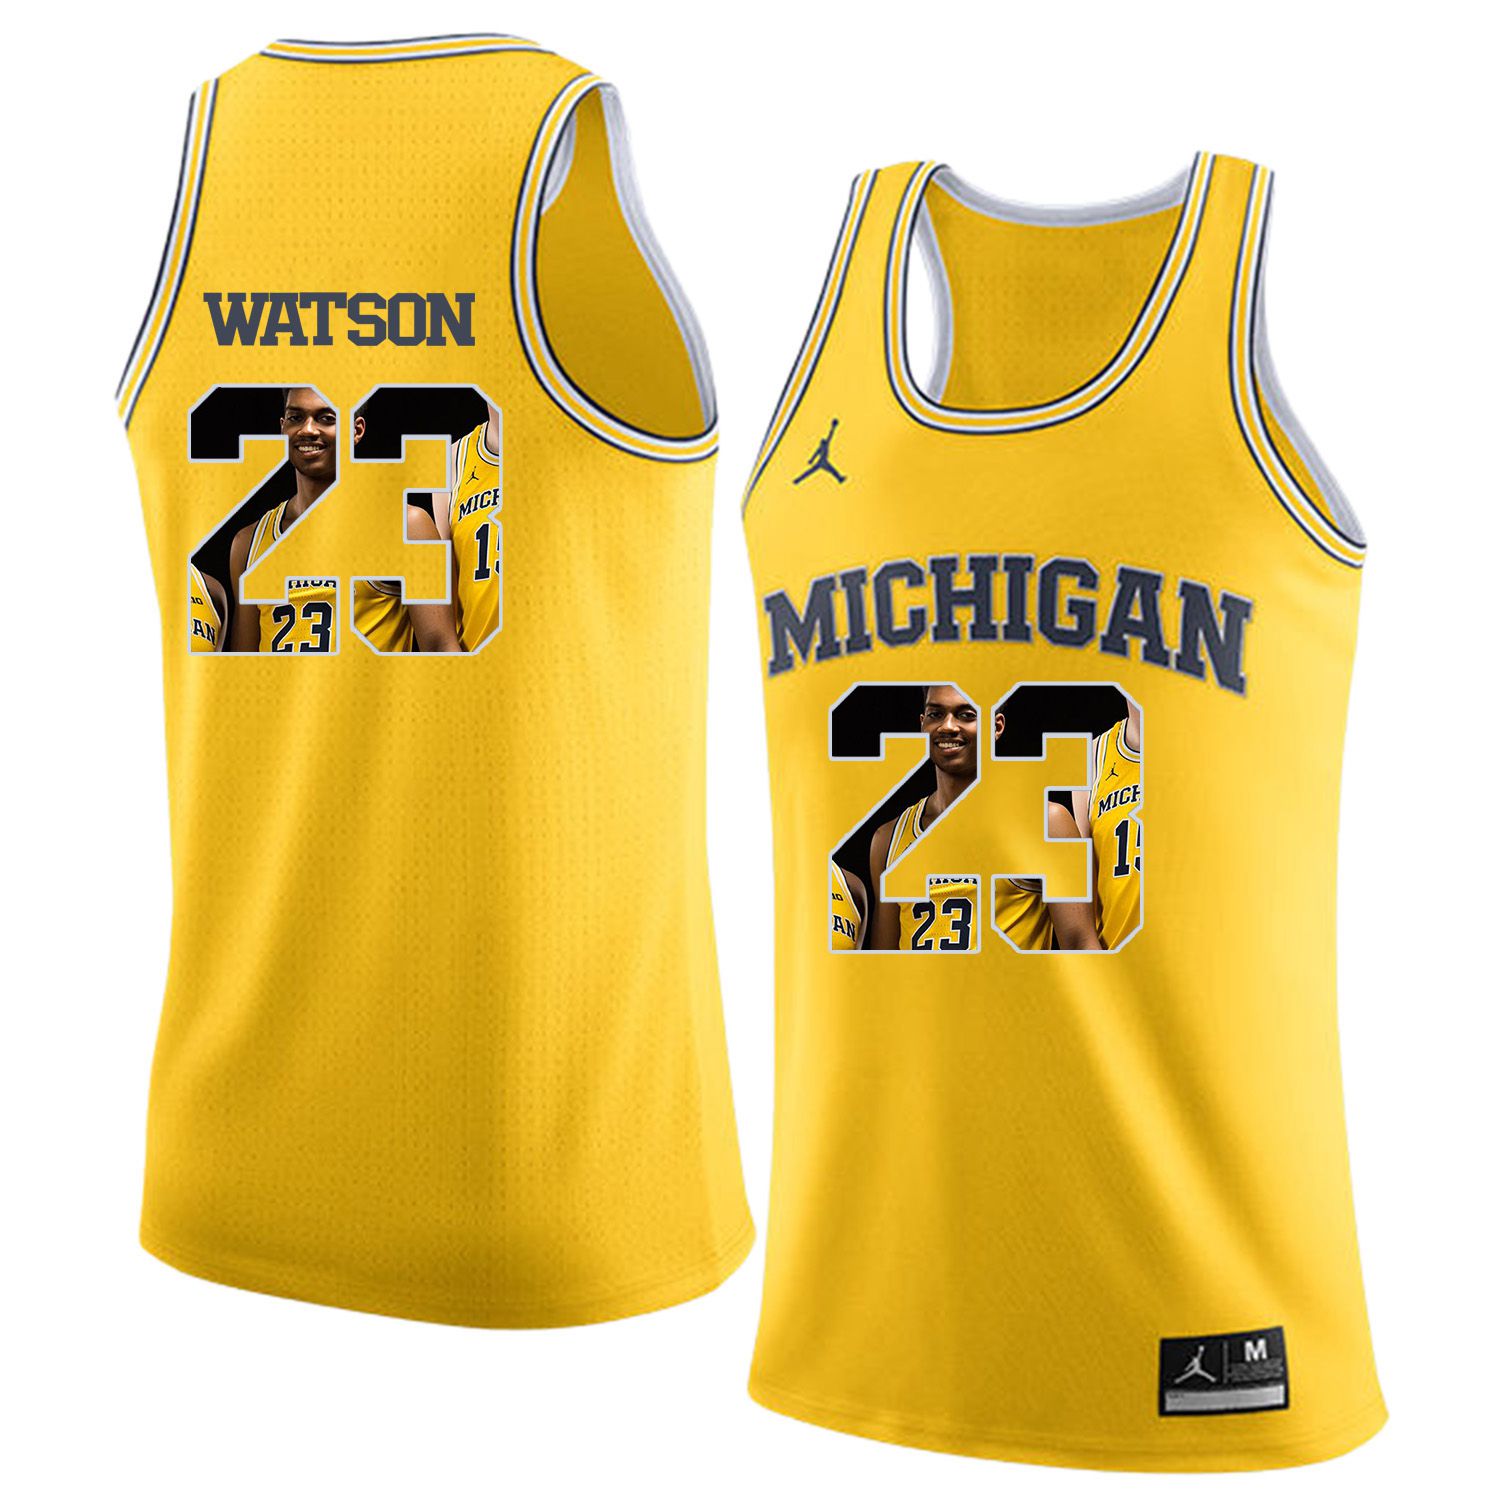 Men Jordan University of Michigan Basketball Yellow 23 Watson Fashion Edition Customized NCAA Jerseys